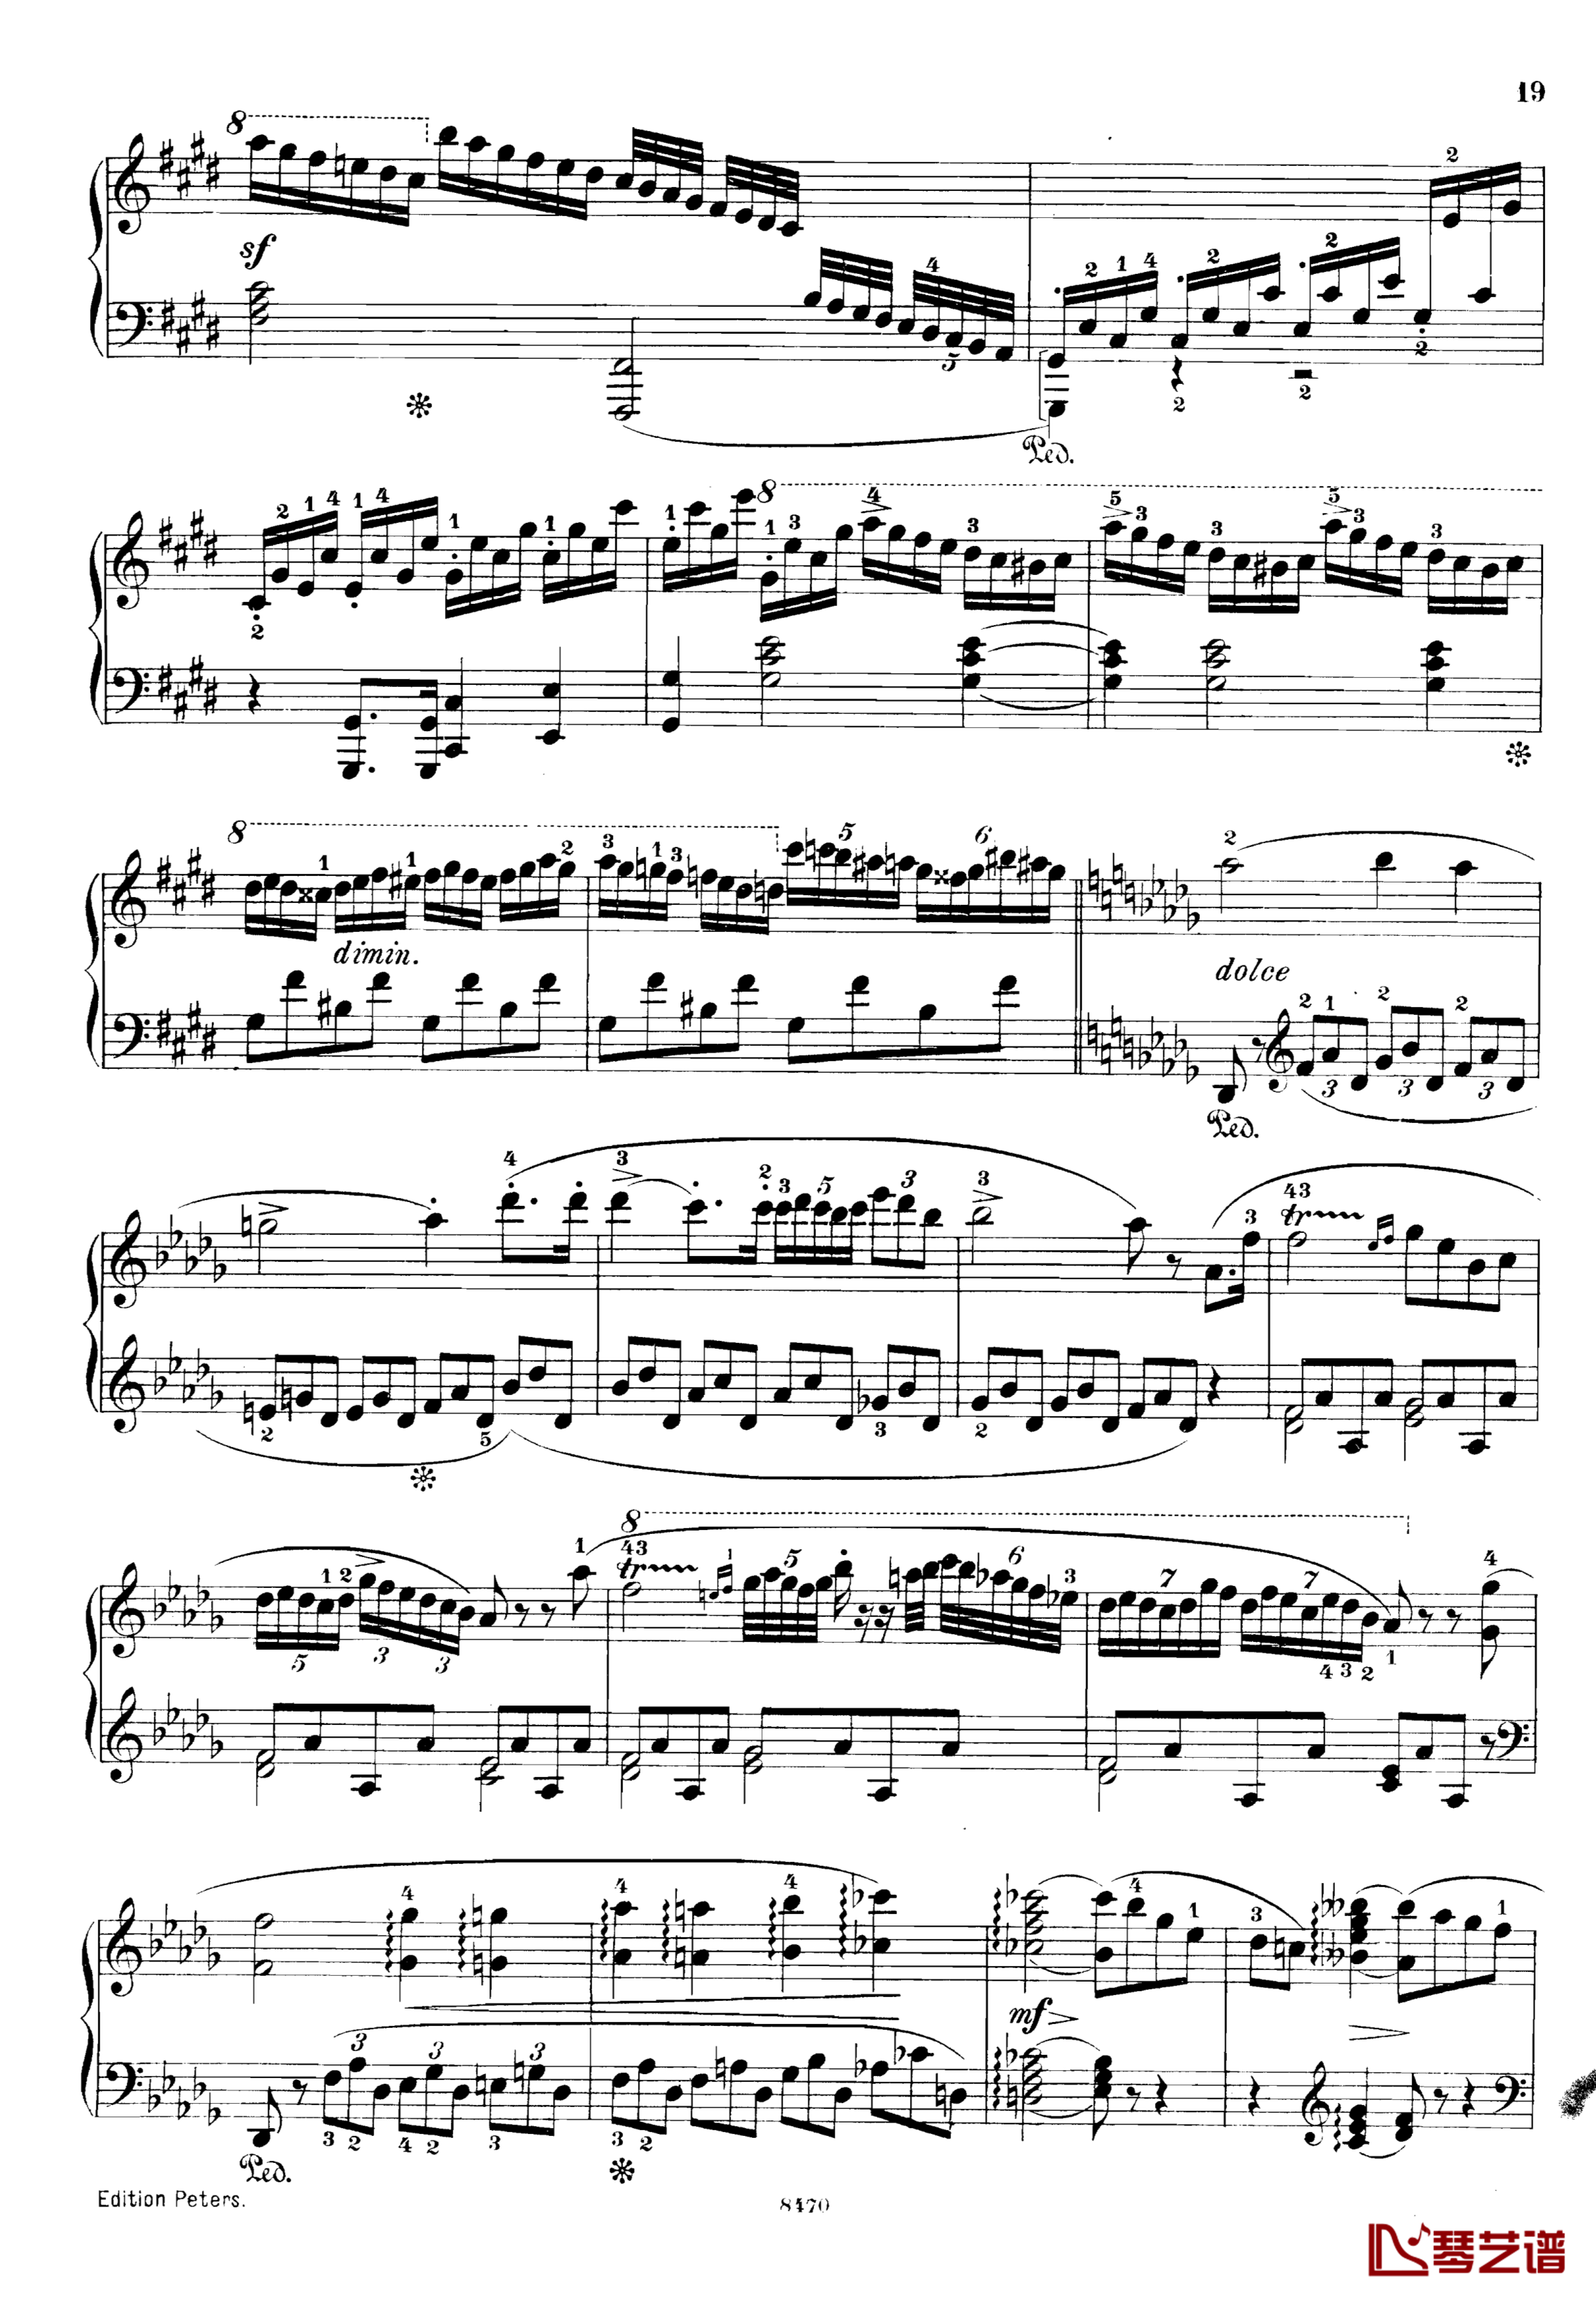 升c小调第三钢琴协奏曲Op.55钢琴谱-克里斯蒂安-里斯19